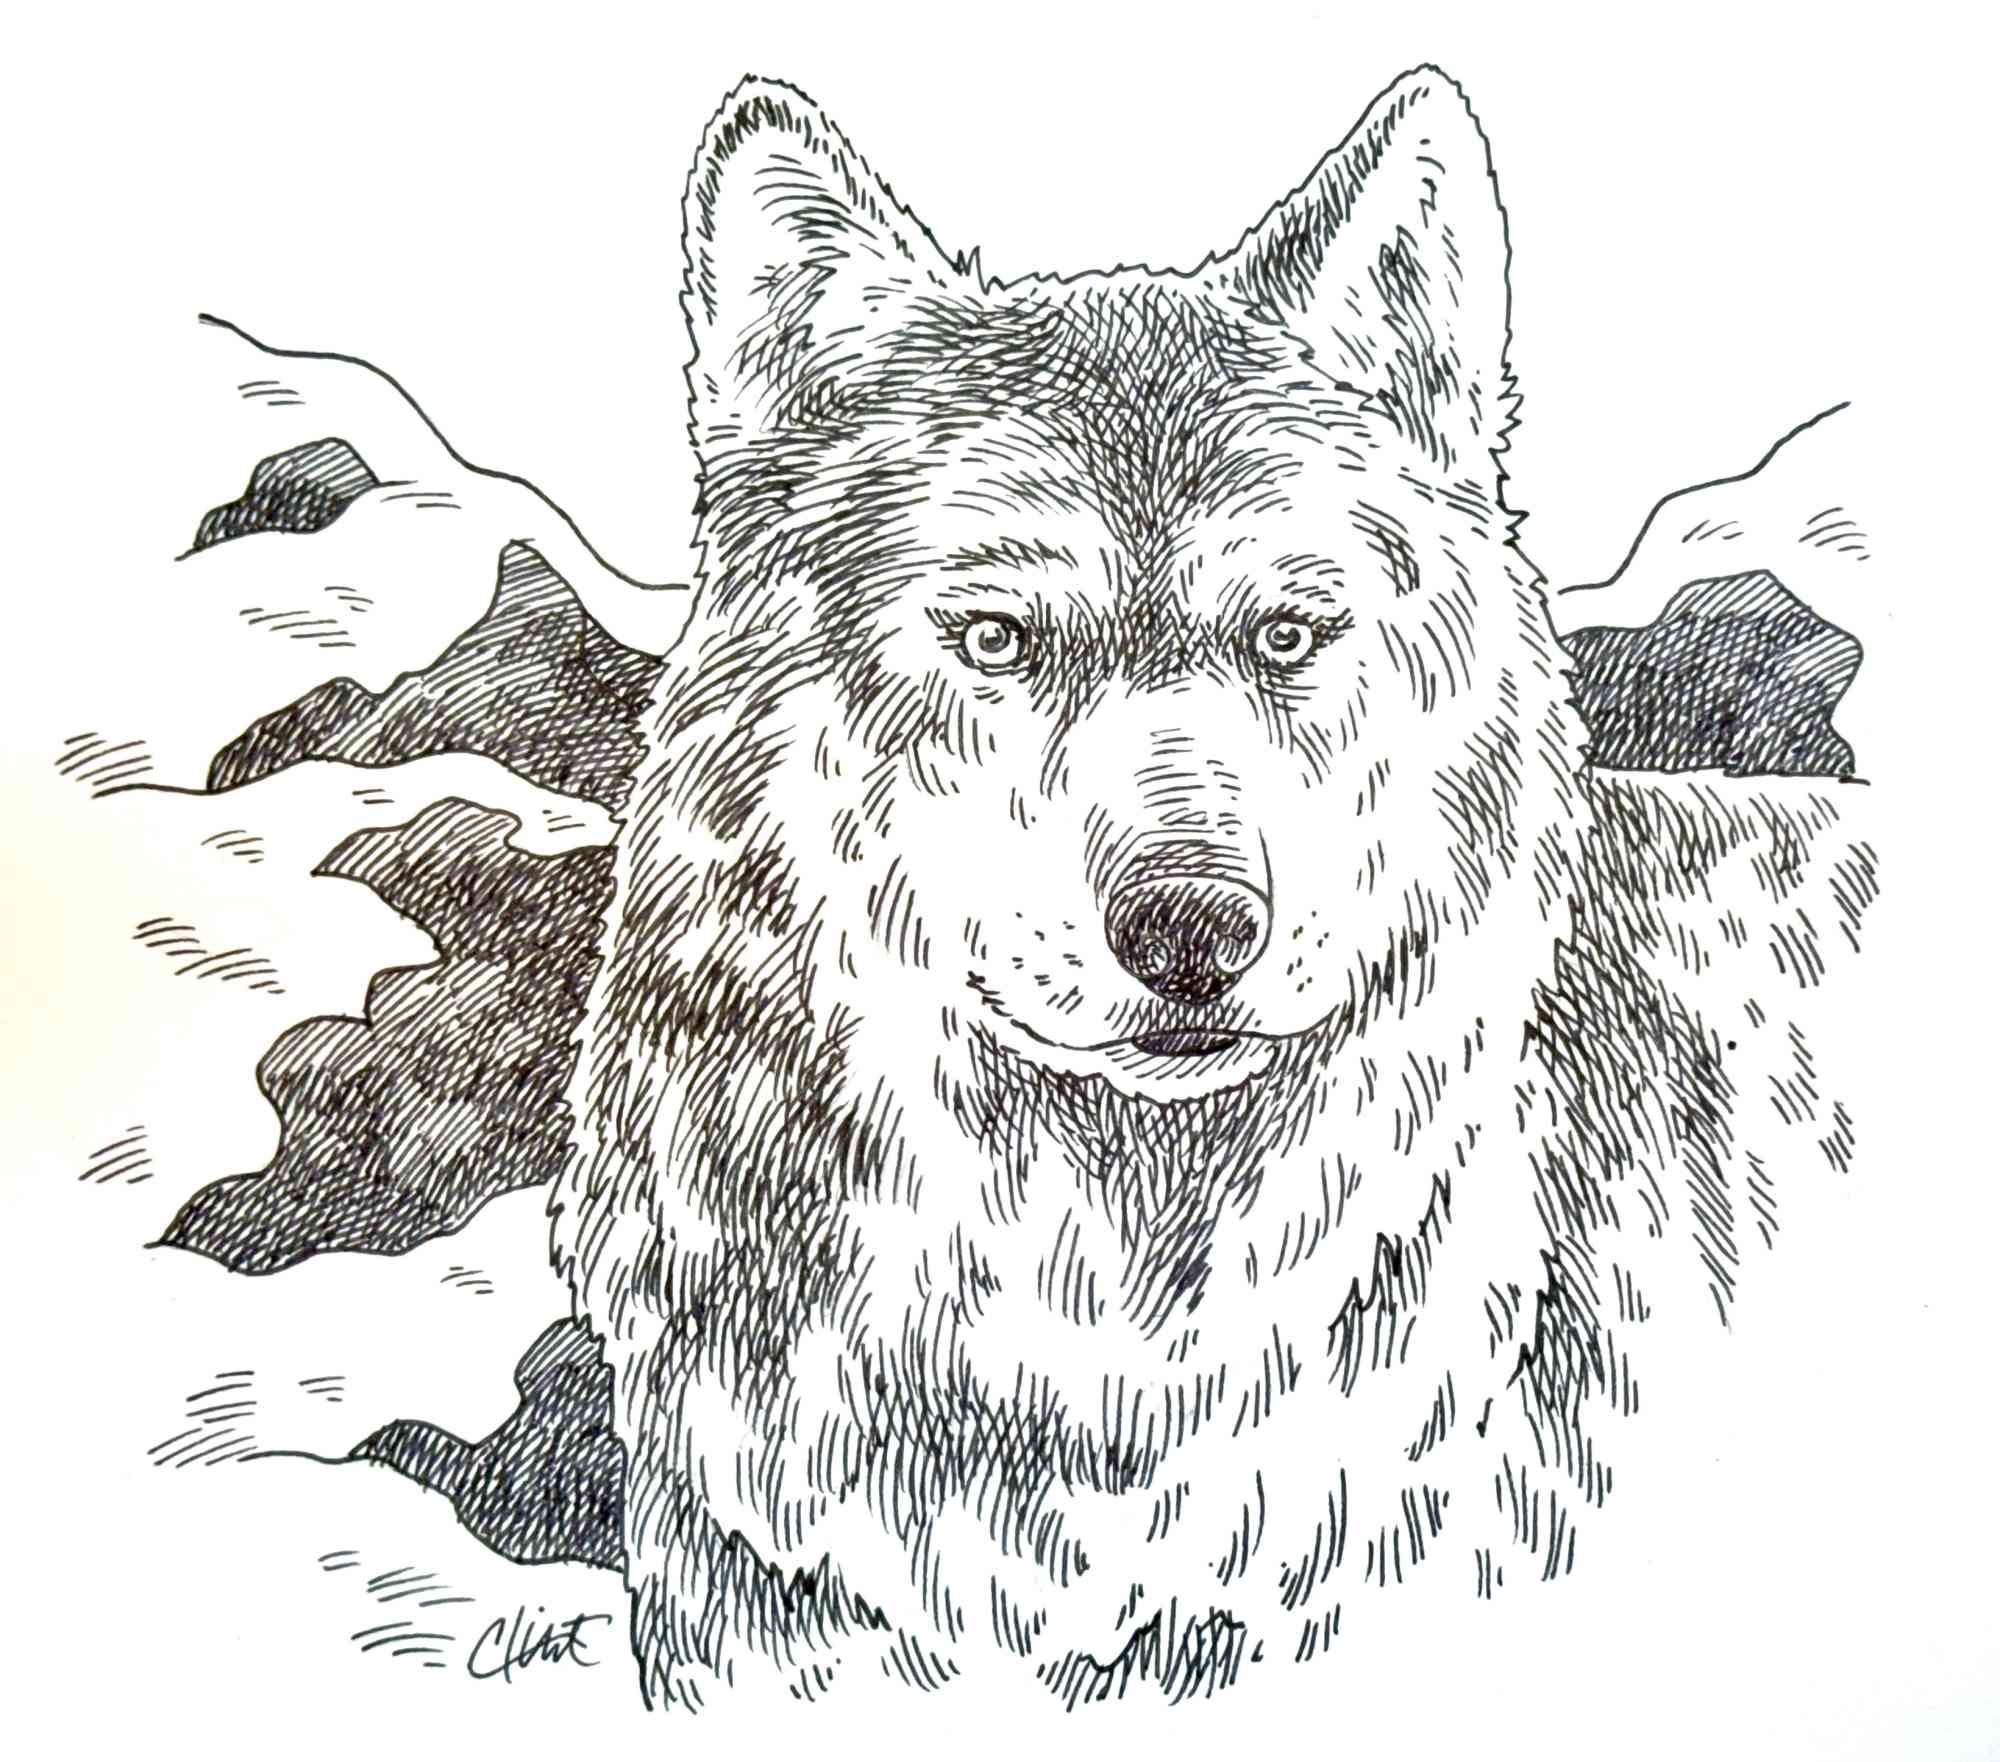 Clint McKnight's Wolf Illustration